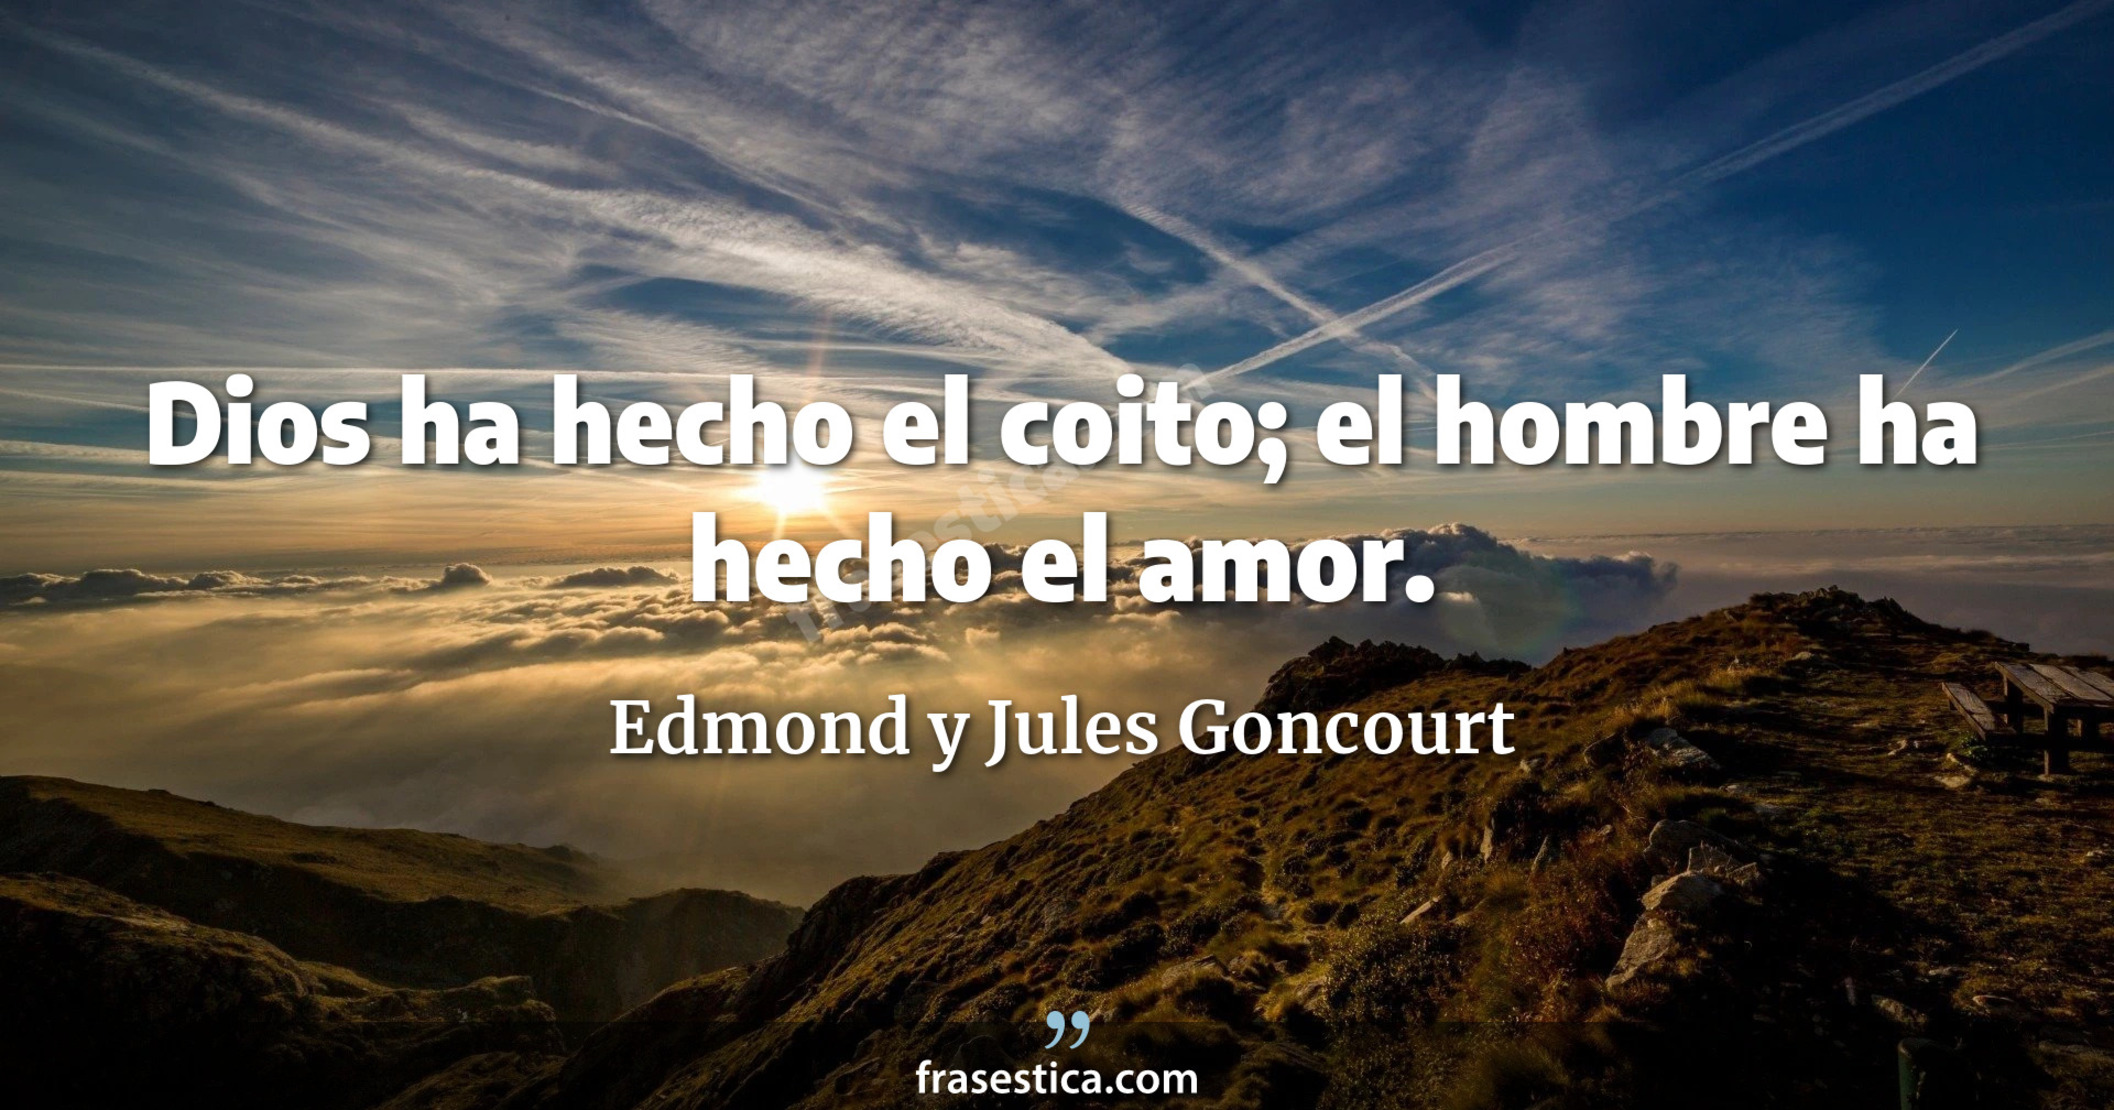 Dios ha hecho el coito; el hombre ha hecho el amor. - Edmond y Jules Goncourt